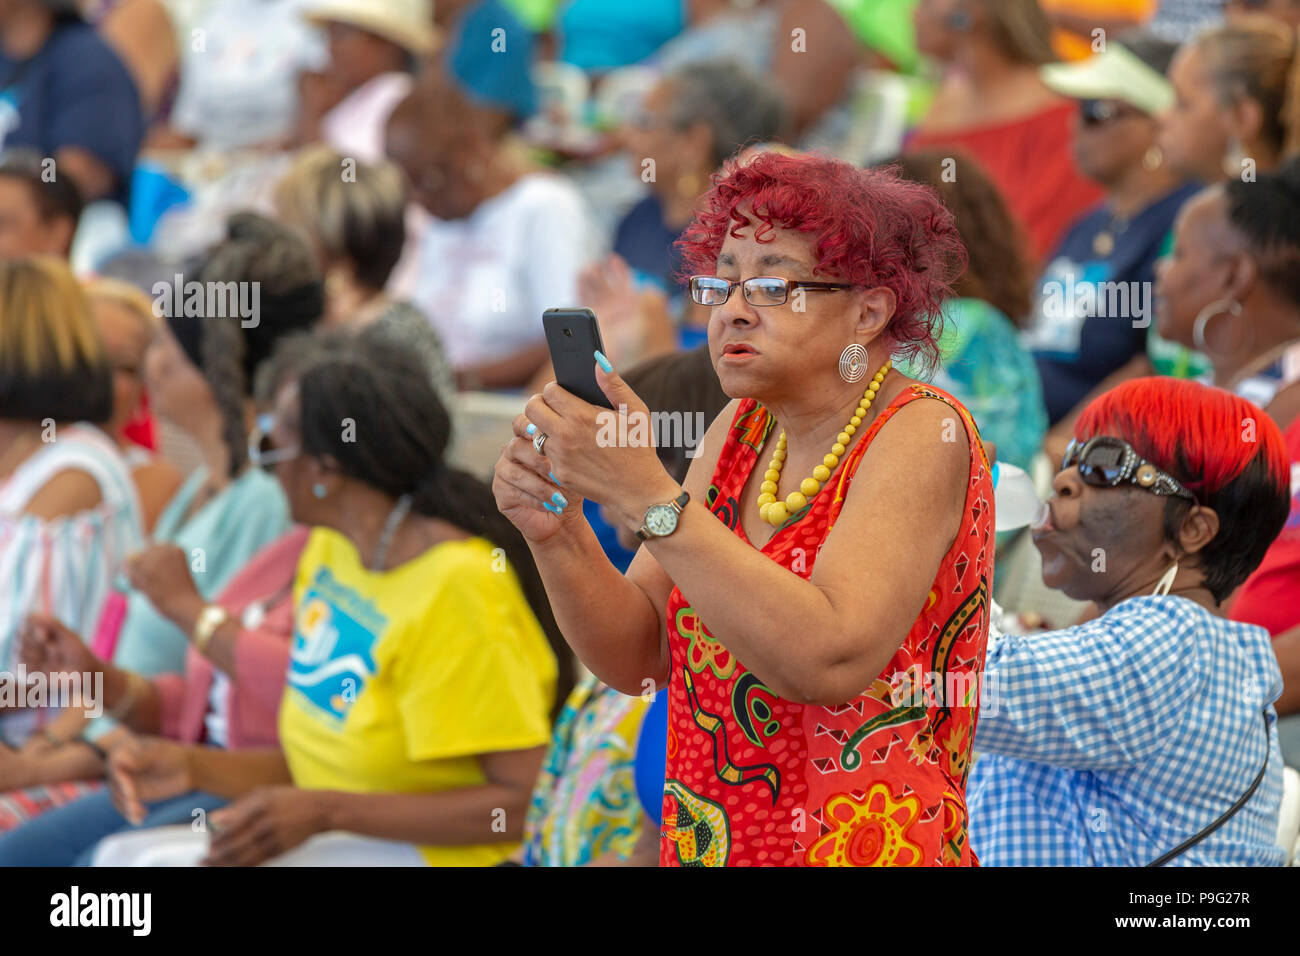 Detroit, Michigan - Una mujer usa su teléfono celular para filmar la acción durante la amistad Senior Day, un evento que reunió a varios miles de ciudadanos de la tercera edad Foto de stock